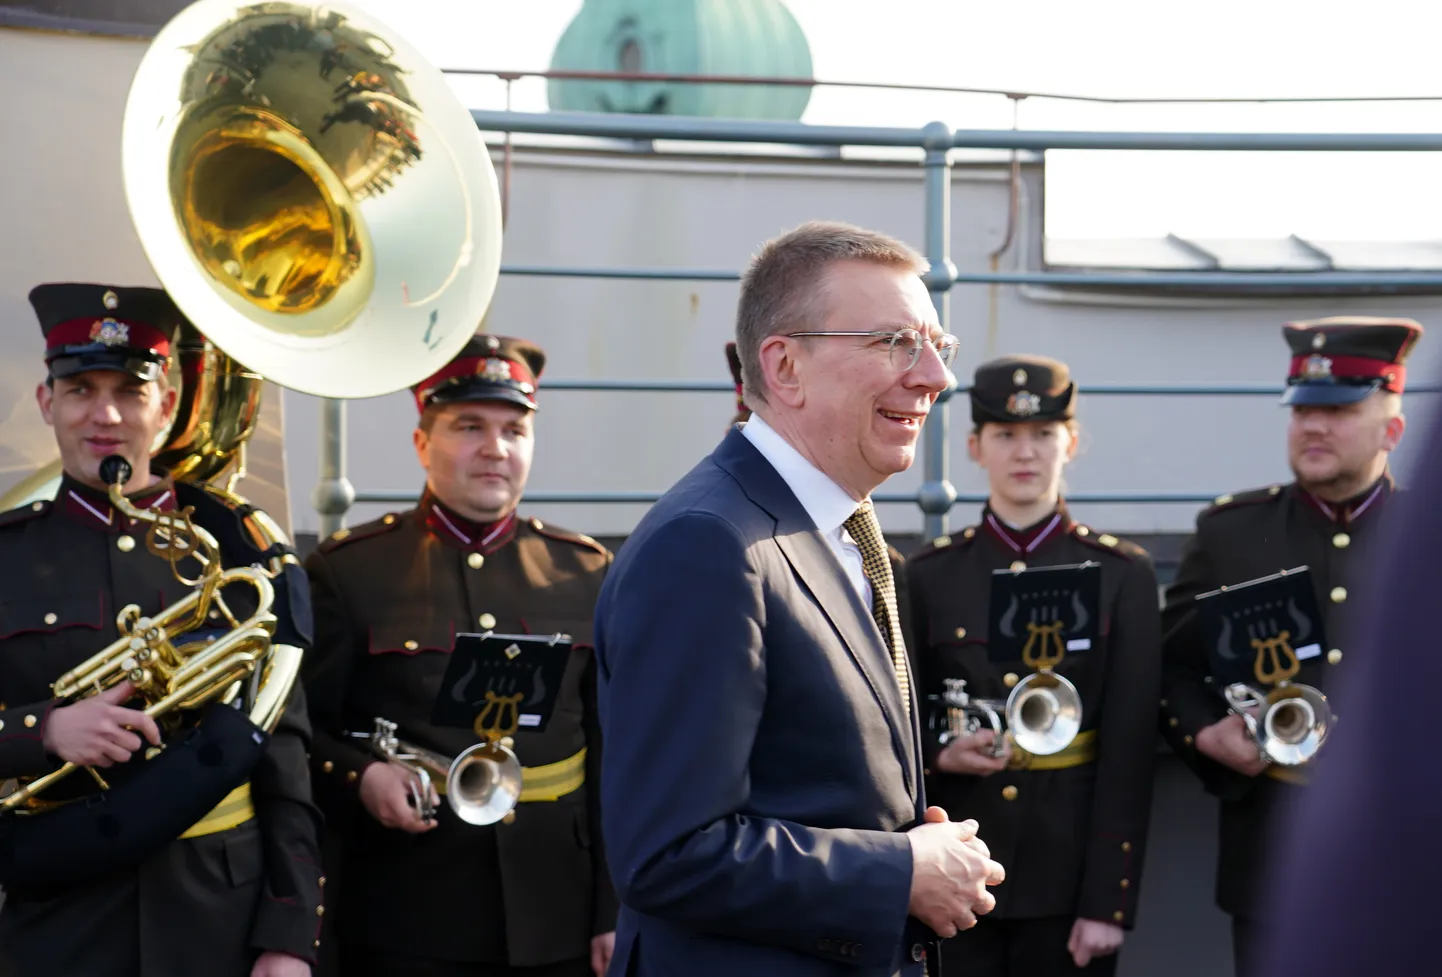 Valsts prezidents Edgars Rinkēvičs (centrā) piedalās Eiropas Savienības karoga pacelšanā Rīgas pils Svētā Gara tornī, atzīmējot Latvijas iestāšanās Eiropas Savienībā 20. gadadienu.